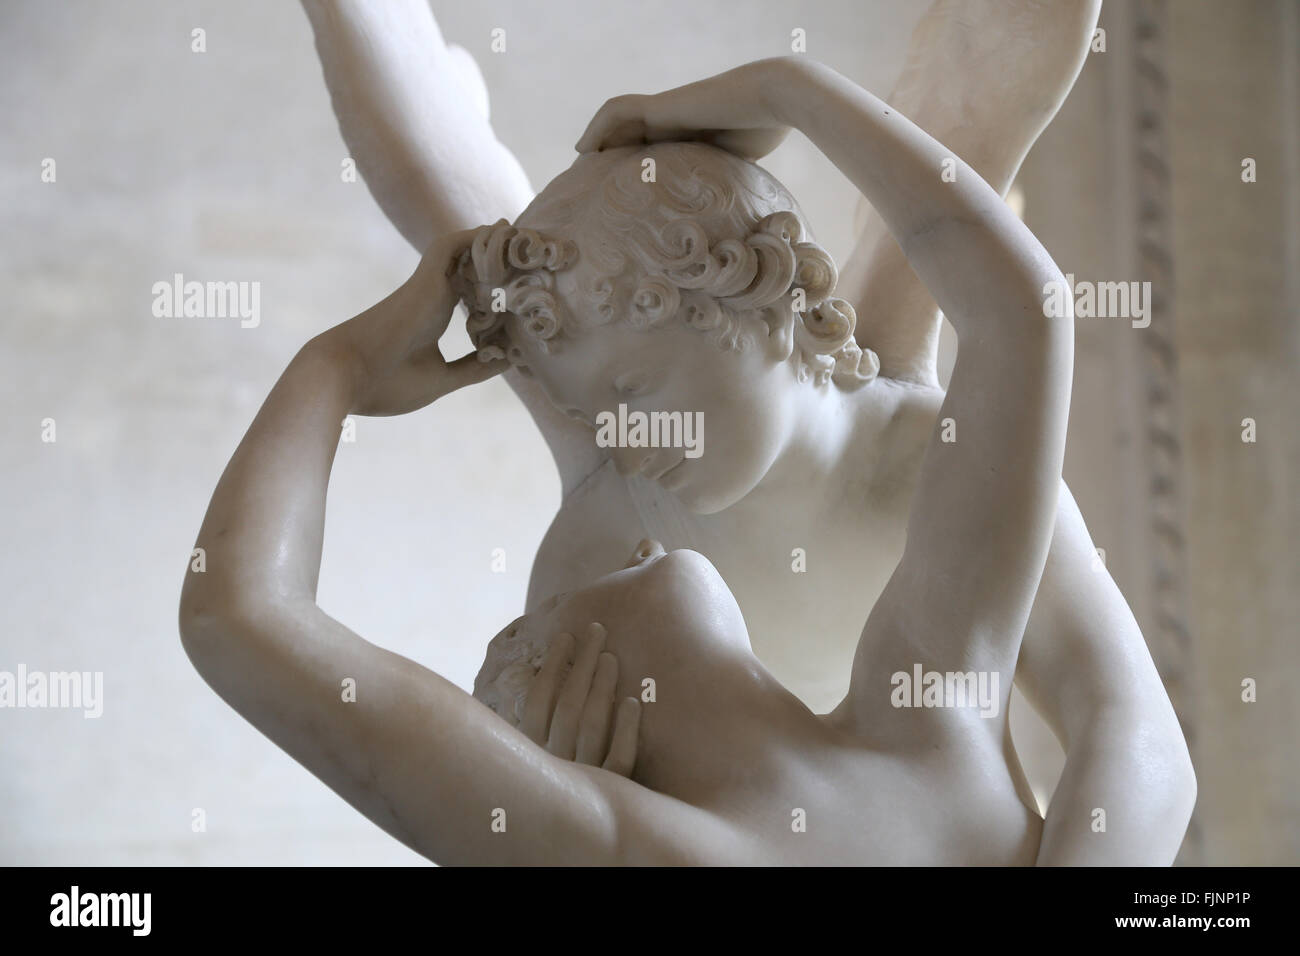 Psiquis reanimado por Cupid's Kiss. Escultura realizada por el escultor neoclásico italiano Antonio Canova (1757-1822). Mármol, 1787. Museo del Louvre. Foto de stock